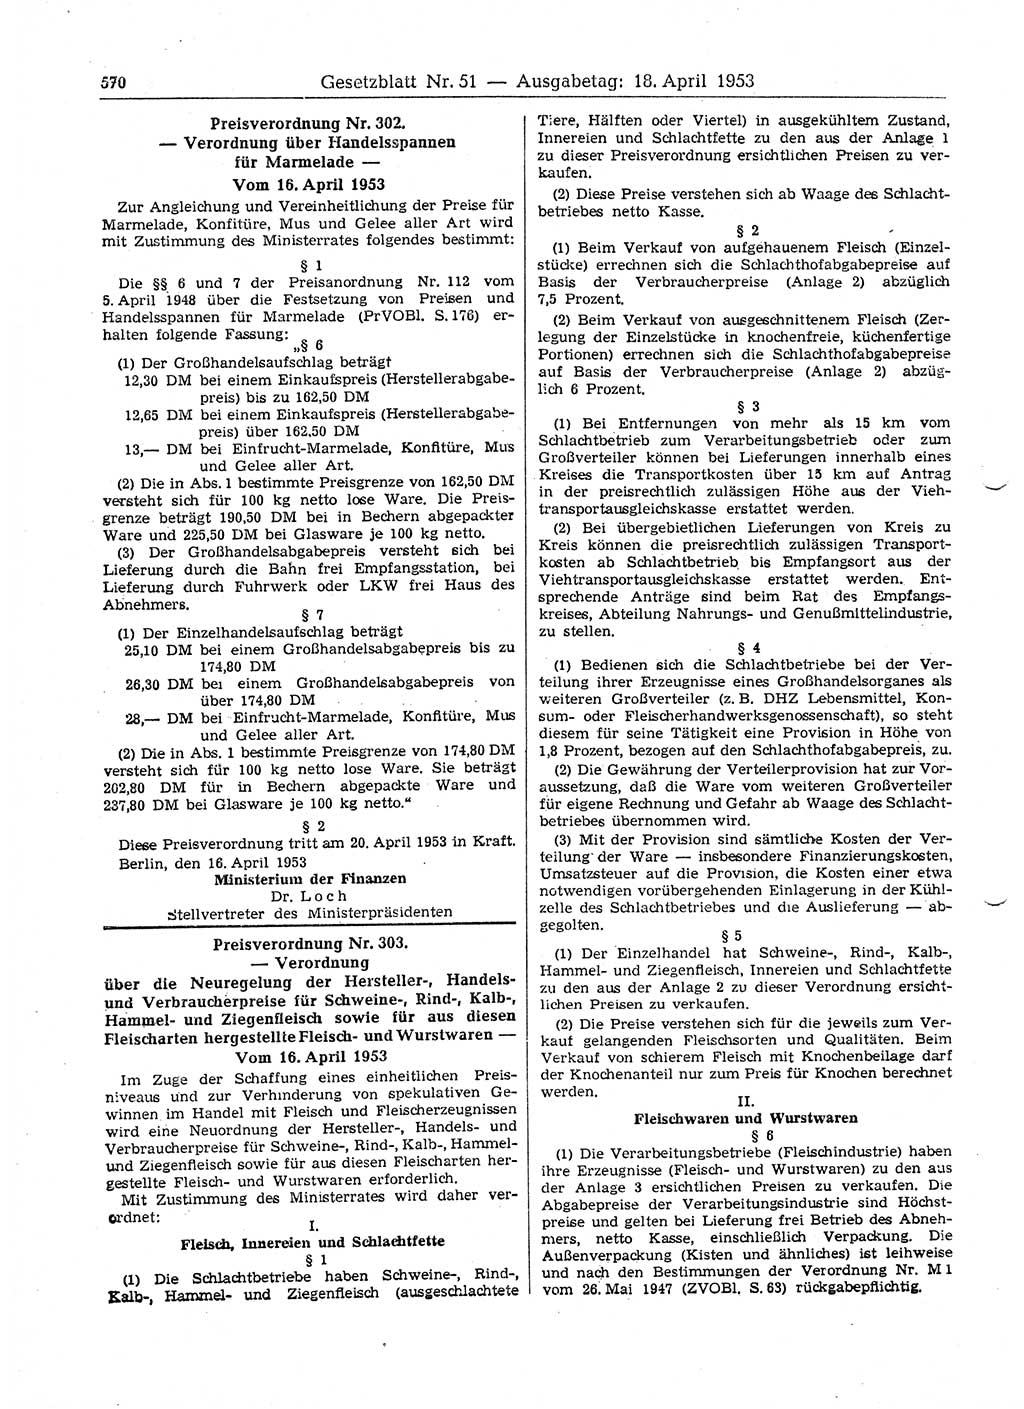 Gesetzblatt (GBl.) der Deutschen Demokratischen Republik (DDR) 1953, Seite 570 (GBl. DDR 1953, S. 570)